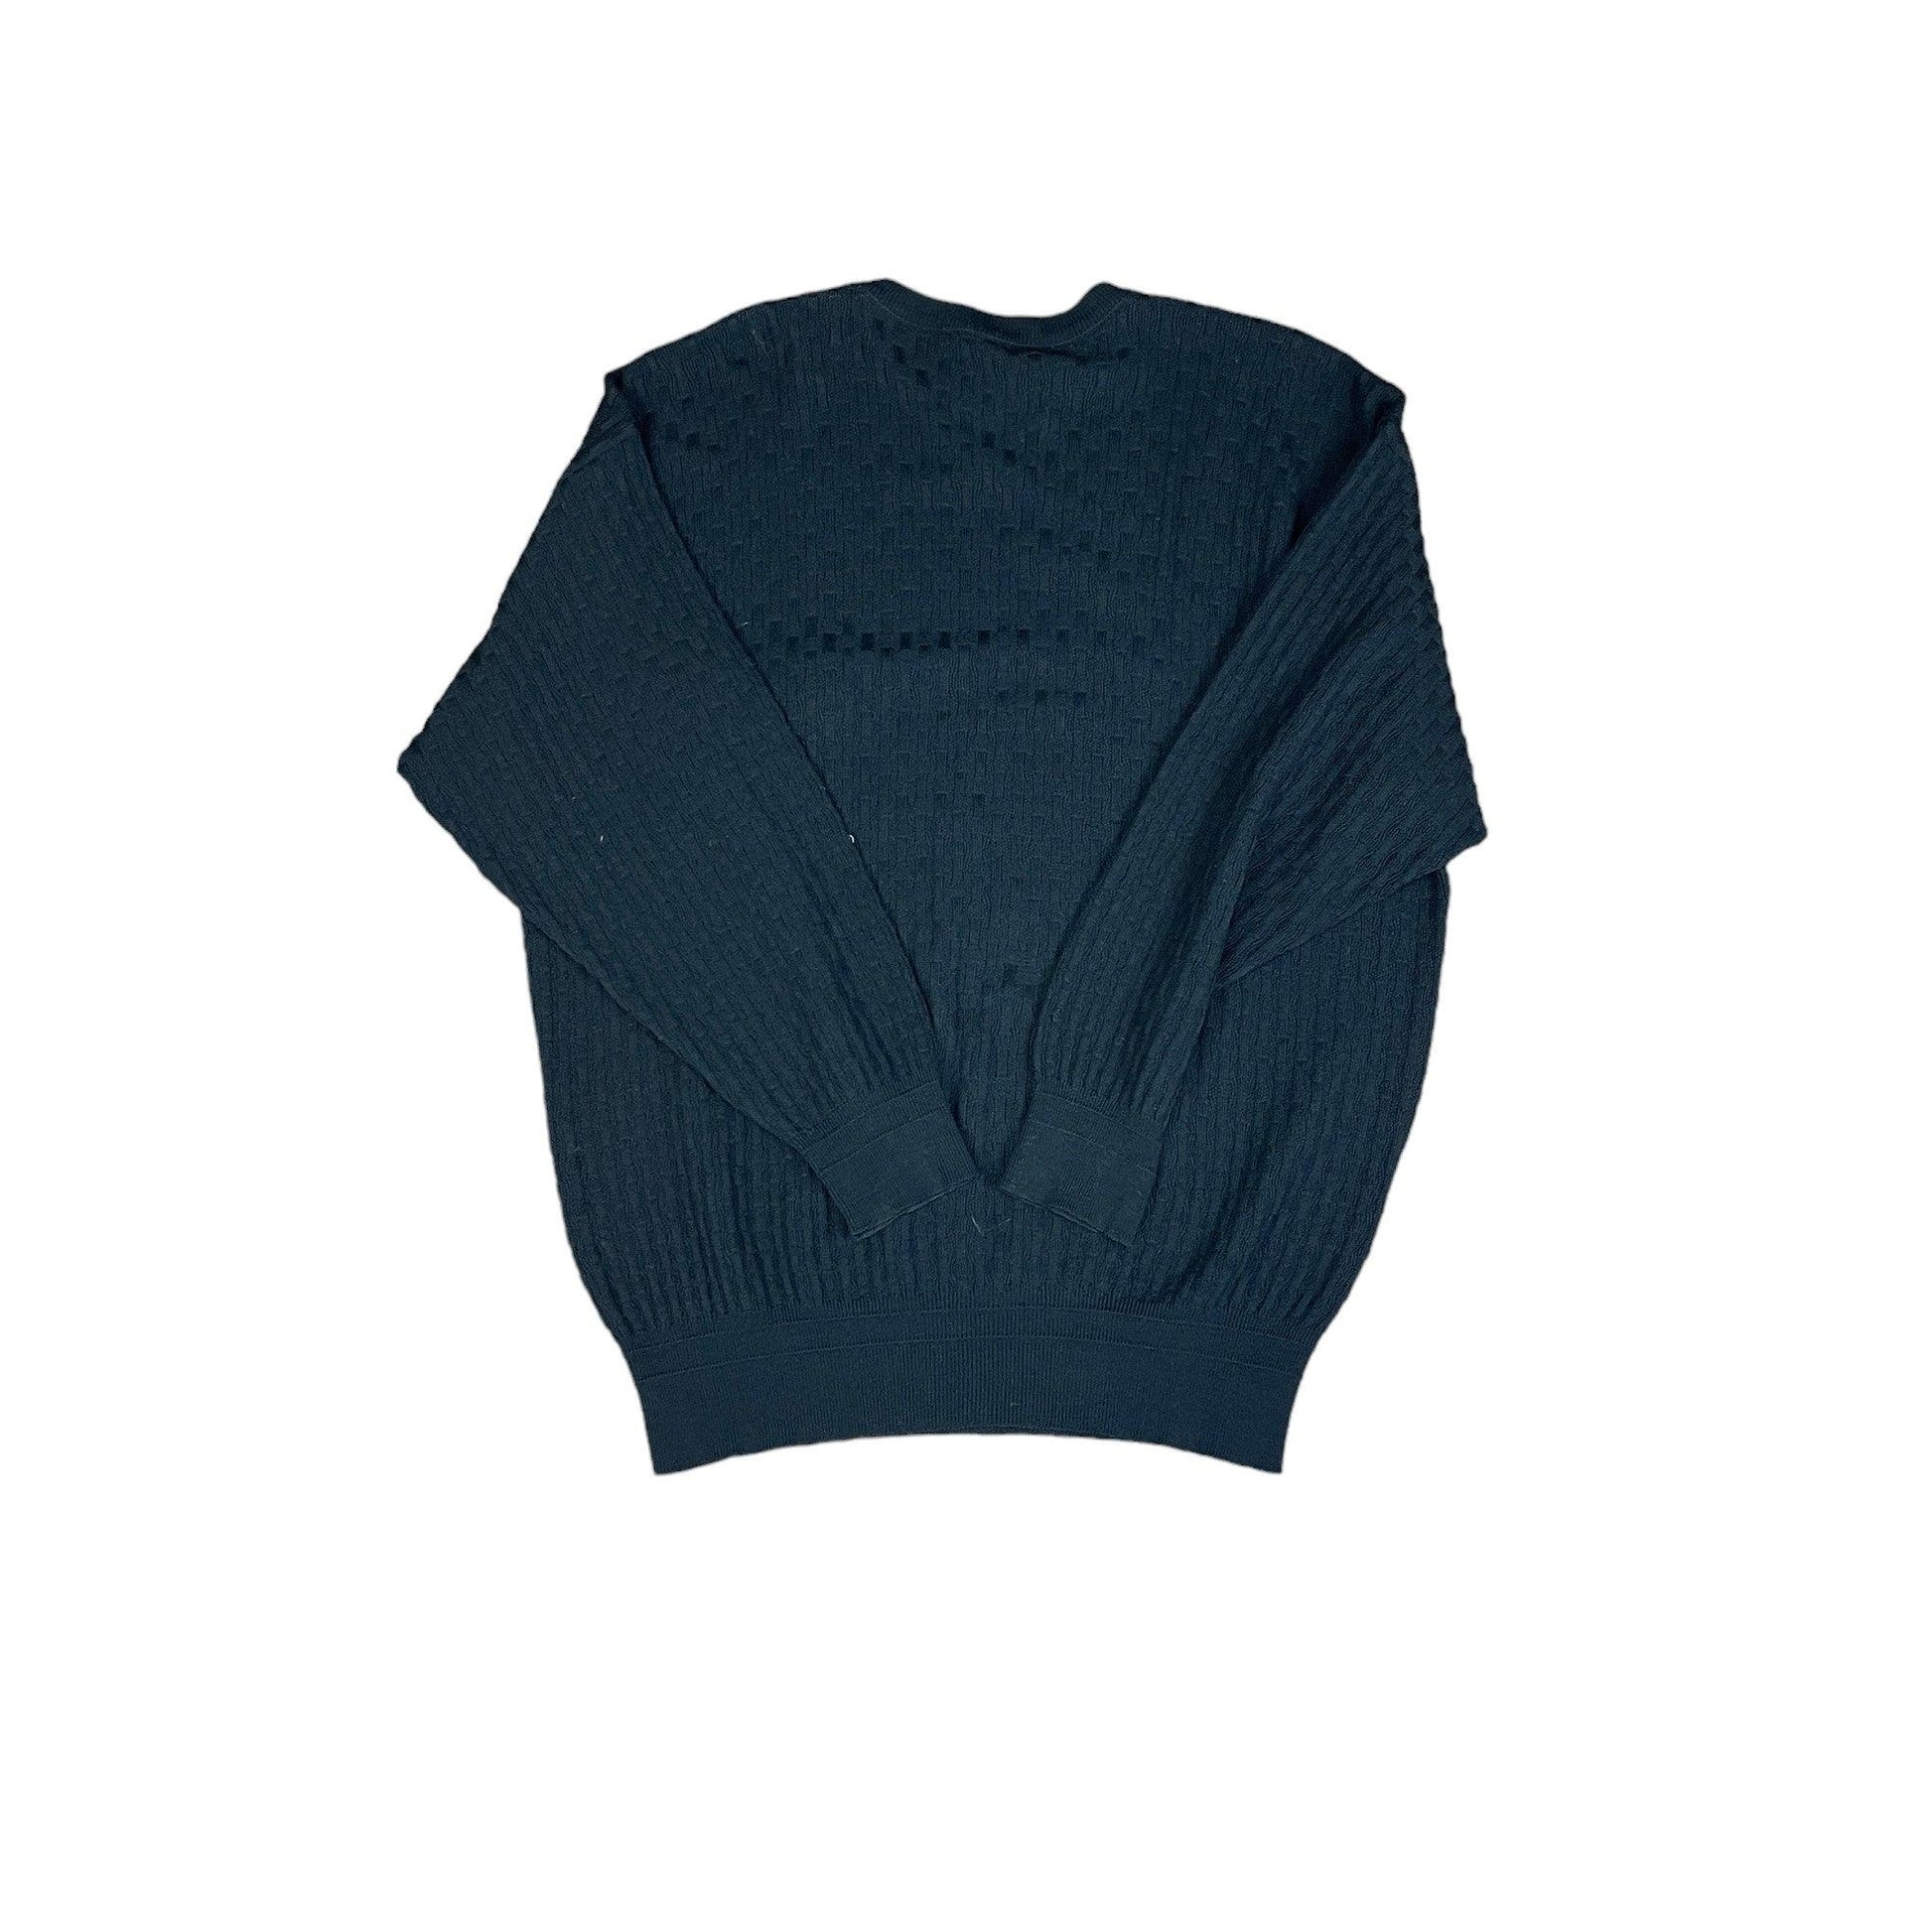 Vintage 90s Black Versace Knitted Sweatshirt - Extra Large - The Streetwear Studio